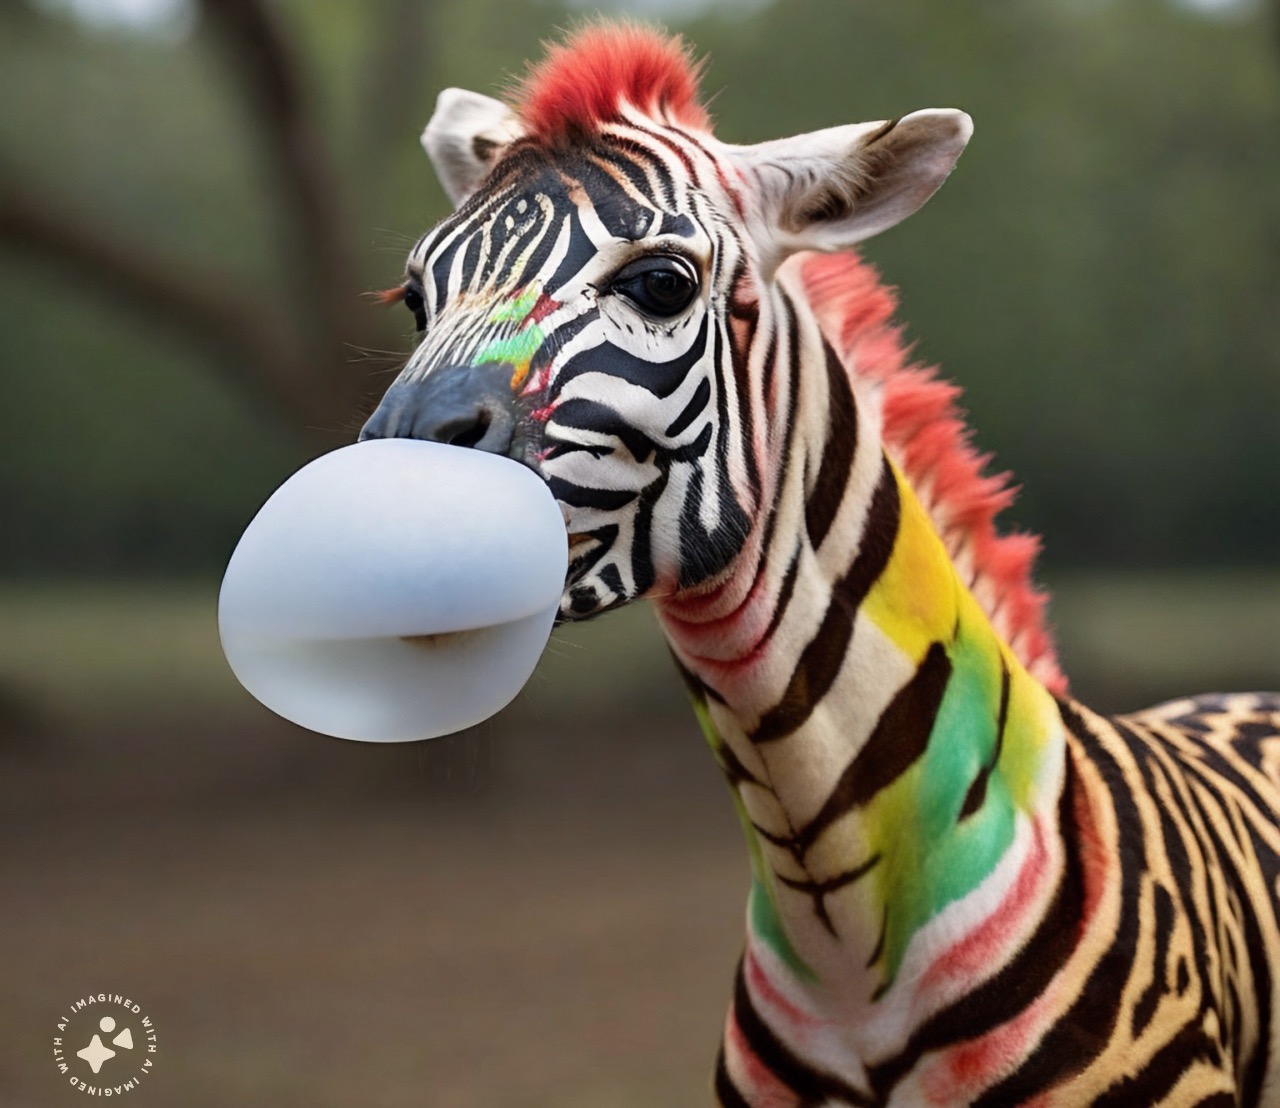 Fruit Stripe Gum zebra blowing a gum bubble